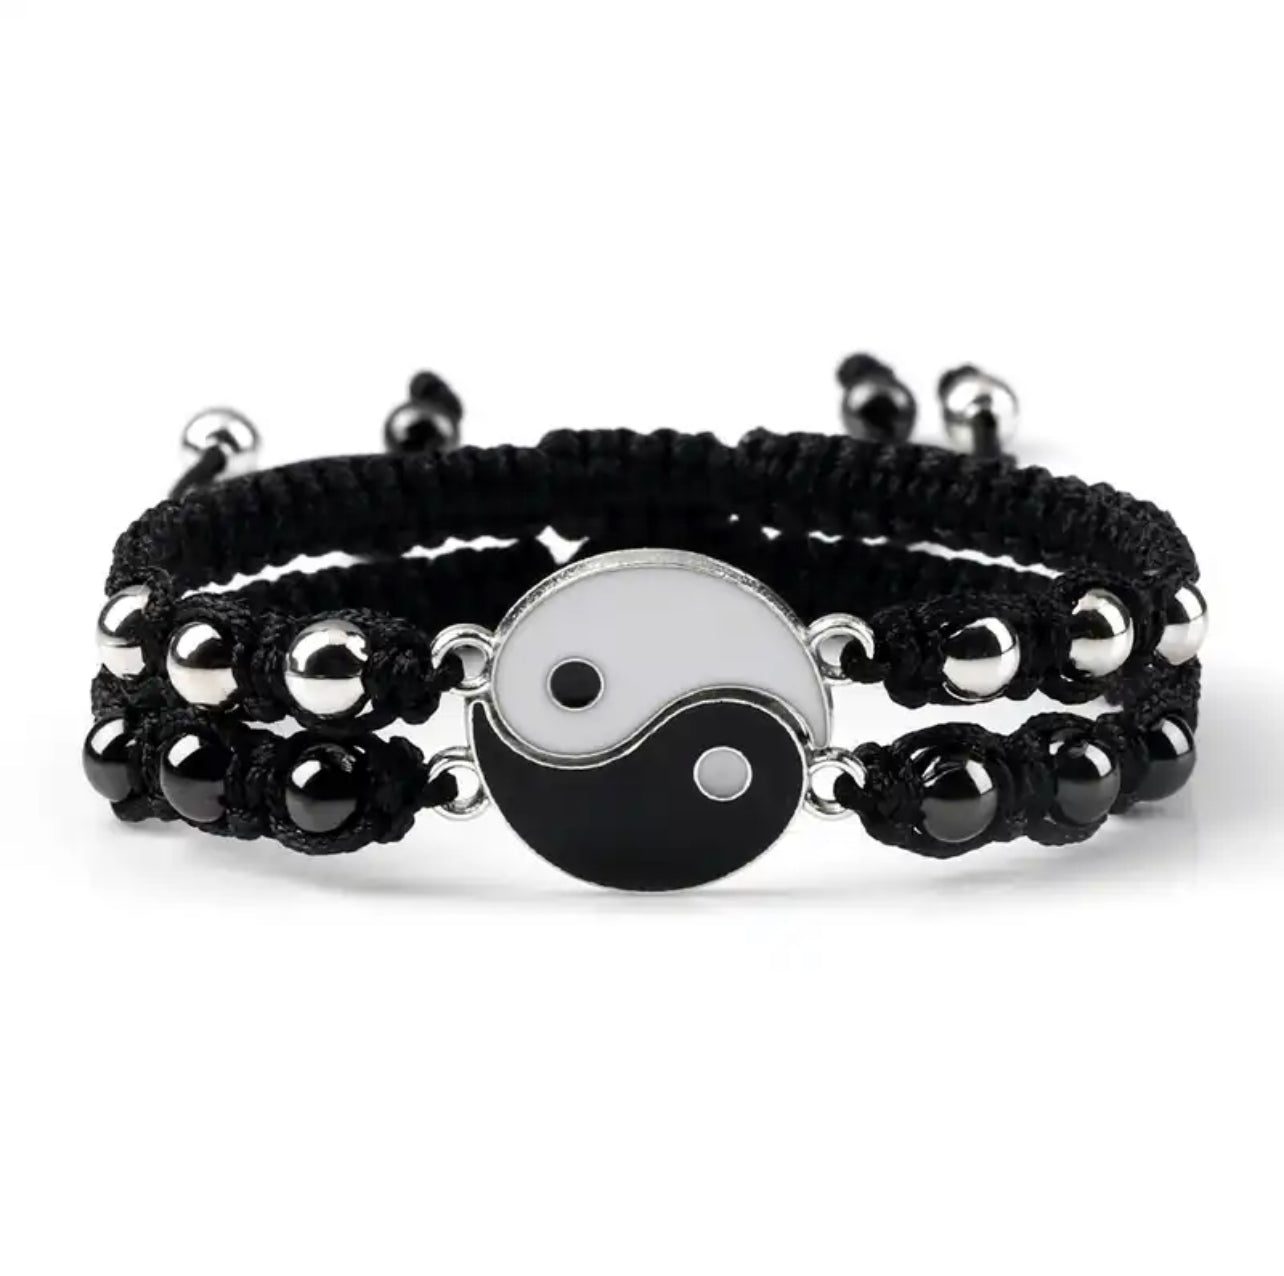 Yin Yang Bracelet, Men's Bracelet With Black and White Yin and Yang Charm,  Yoga Bracelet, Charm Bracelet for Men, Gift for Him, Spiritual - Etsy  Denmark